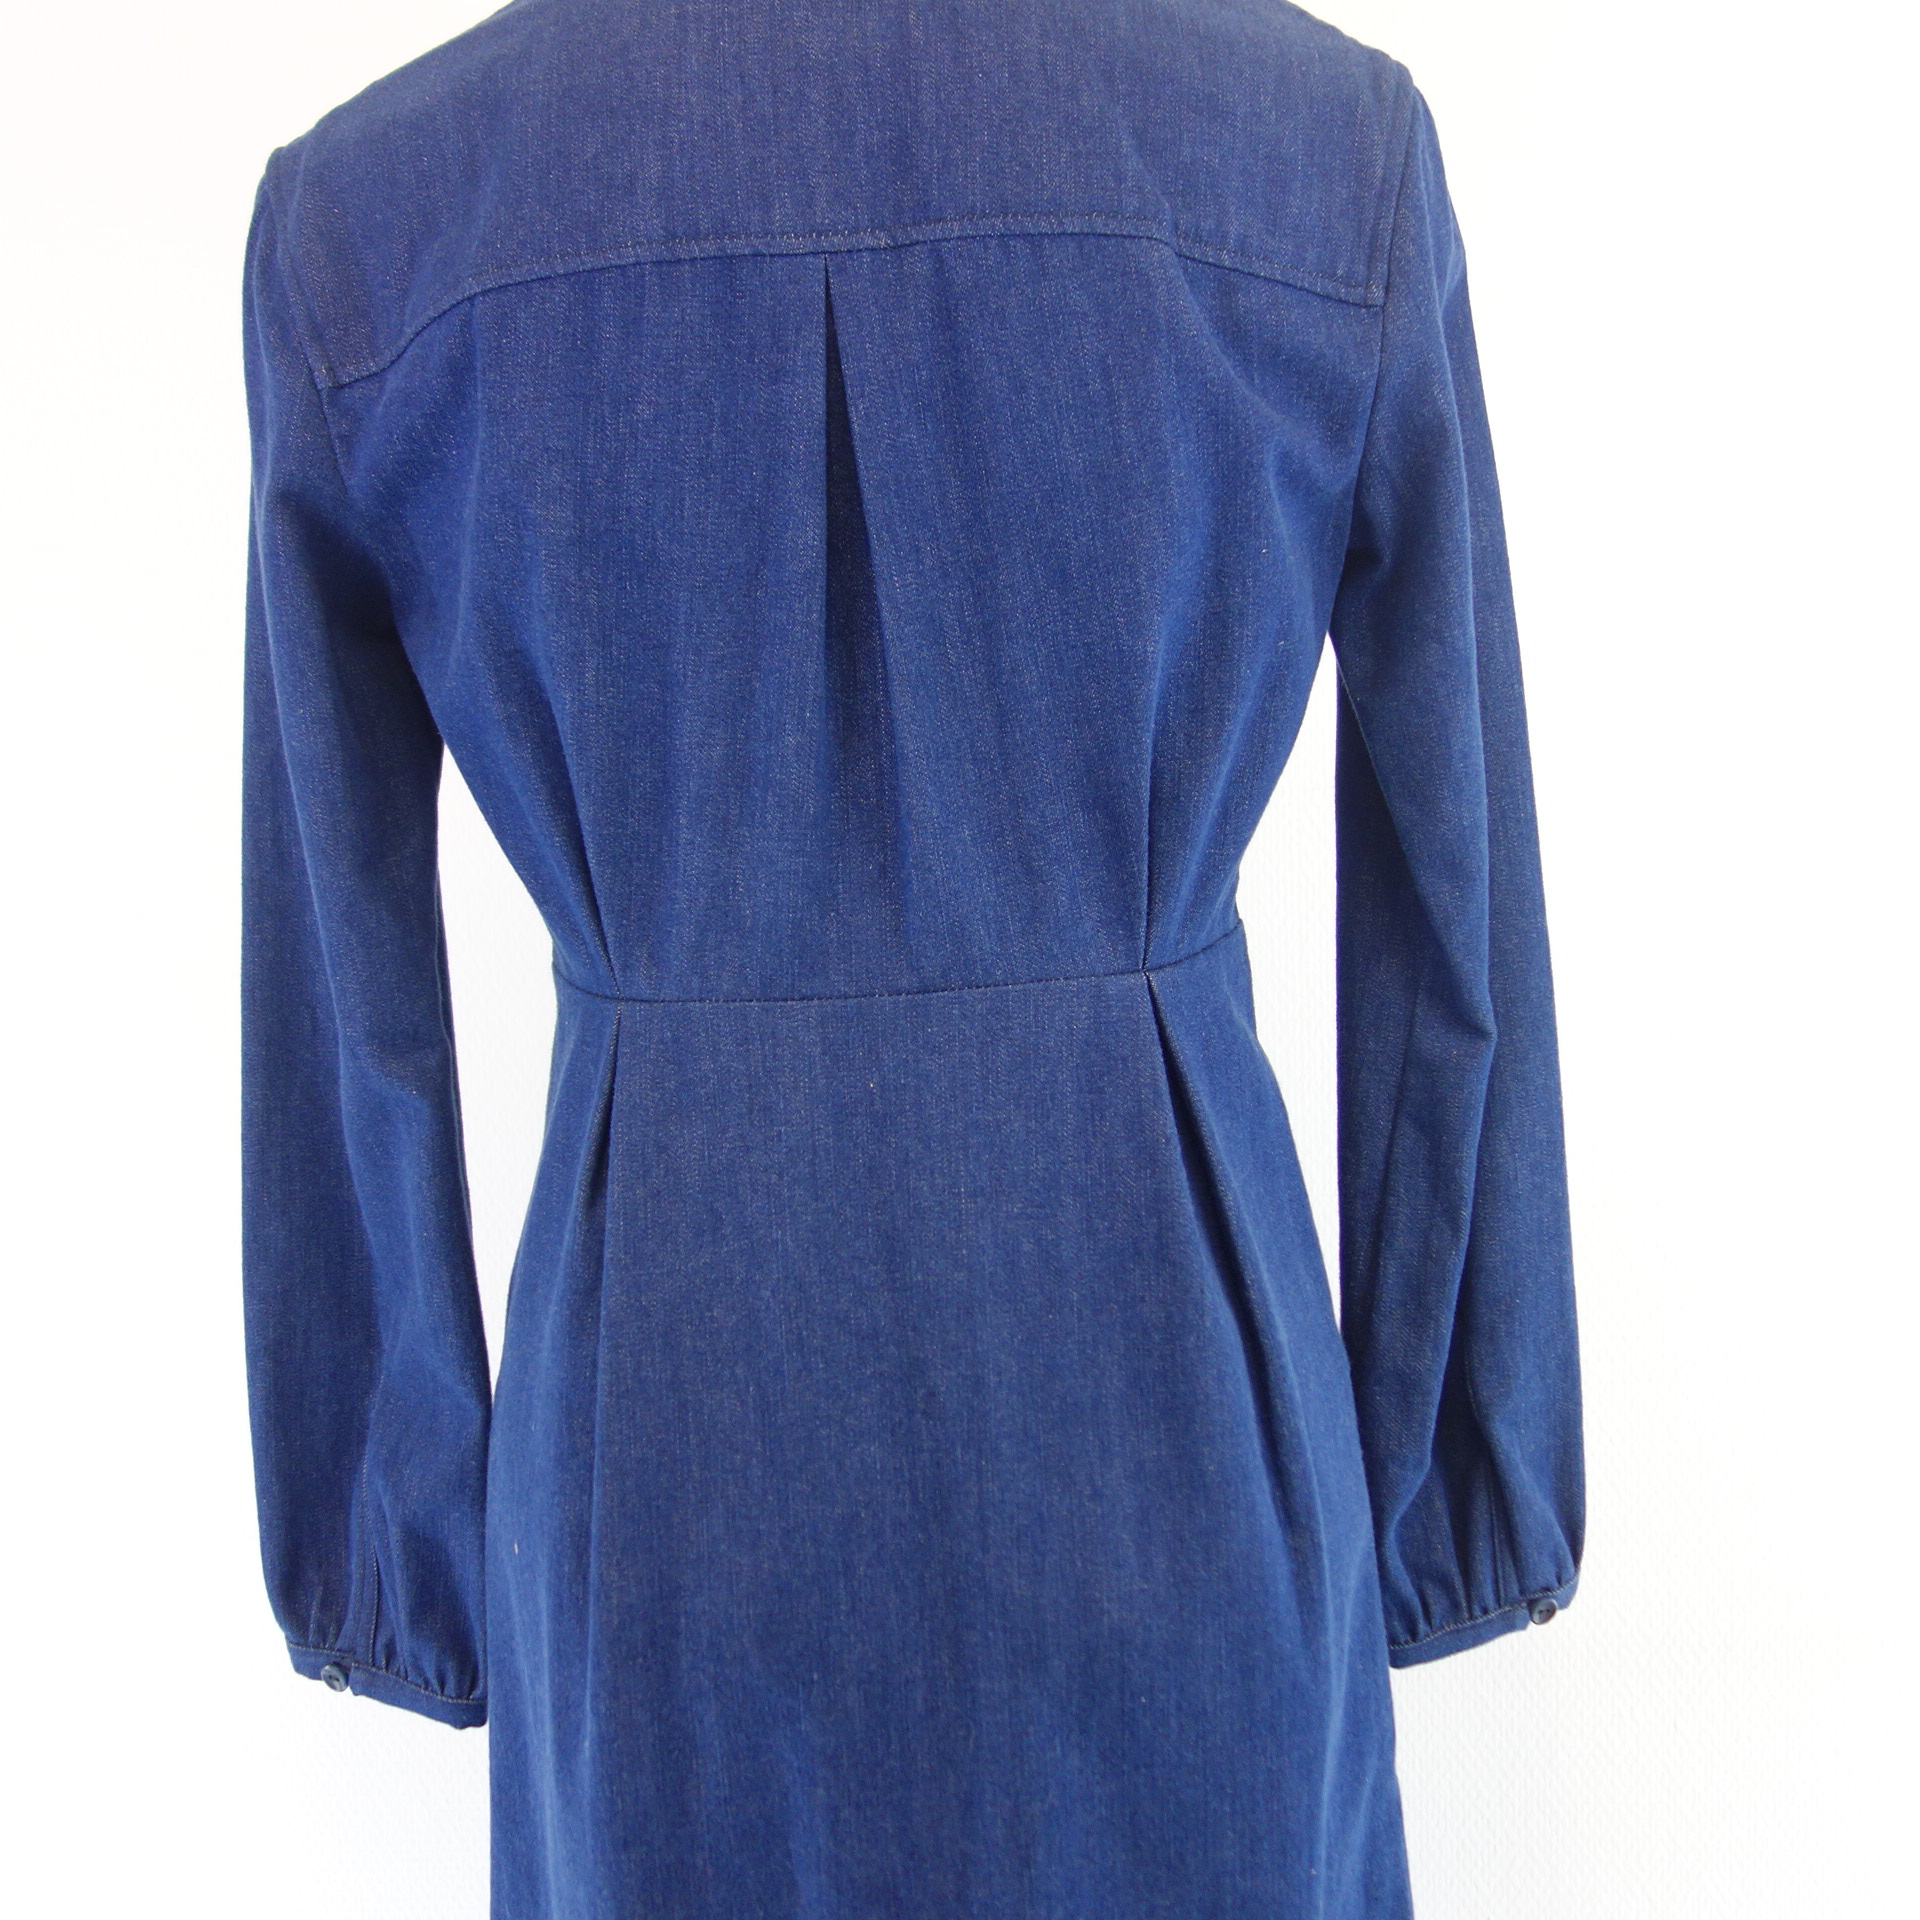 HAPPY HAUS Damen Midi Jeans Kleid Jeanskleid Blau Denim Gr 34 mit Taschen